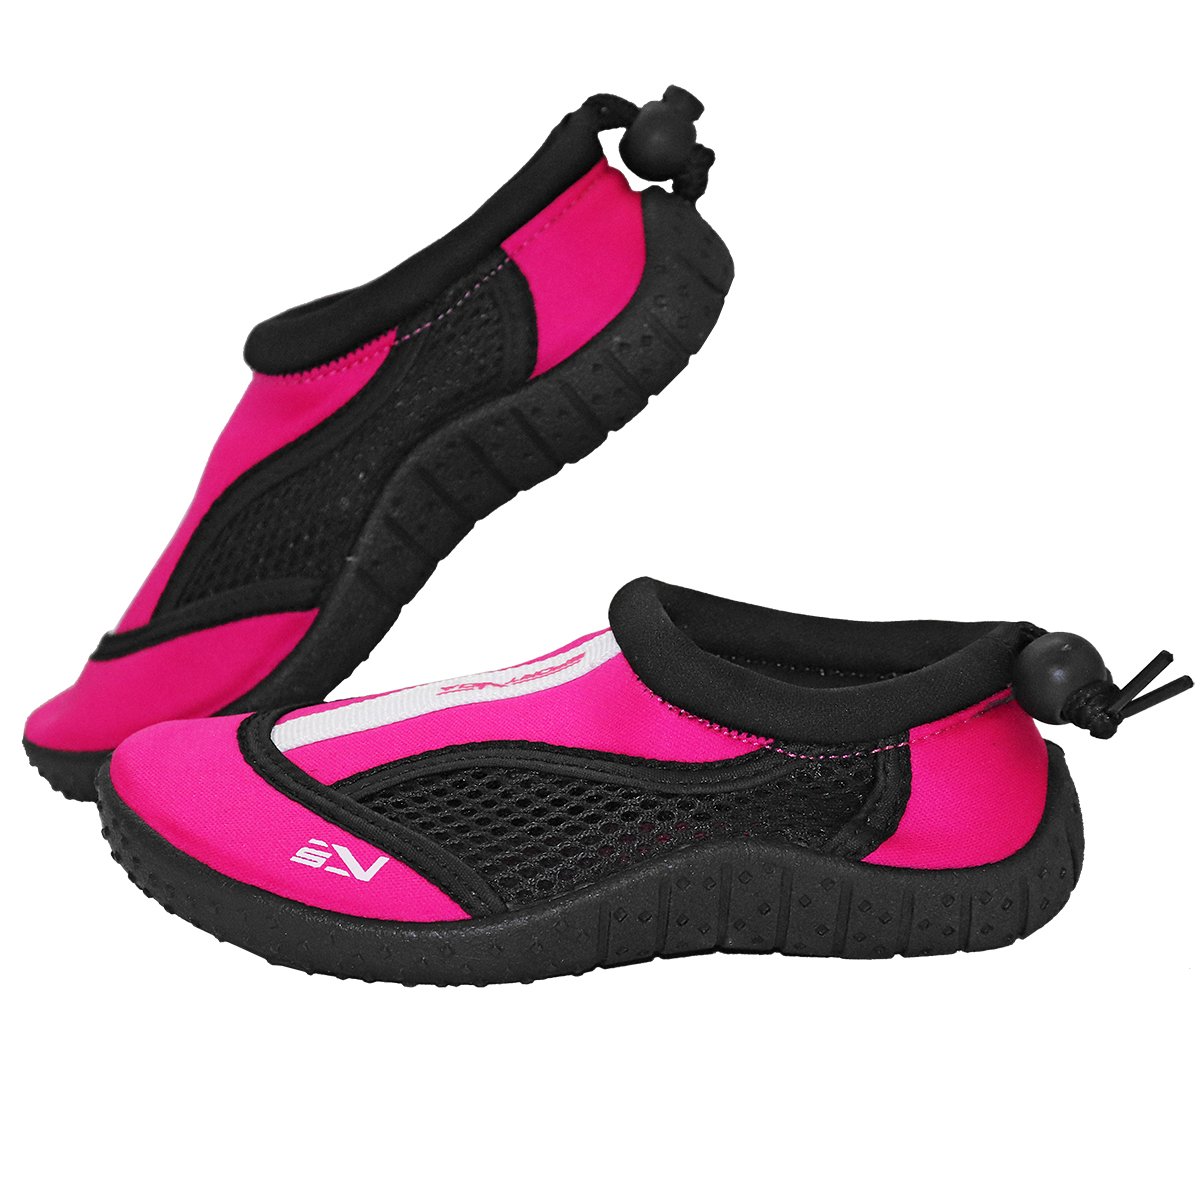 Обувь для пляжа и кораллов (аквашузы) SportVida SV-GY0001-R32 Size 32 Black/Pink